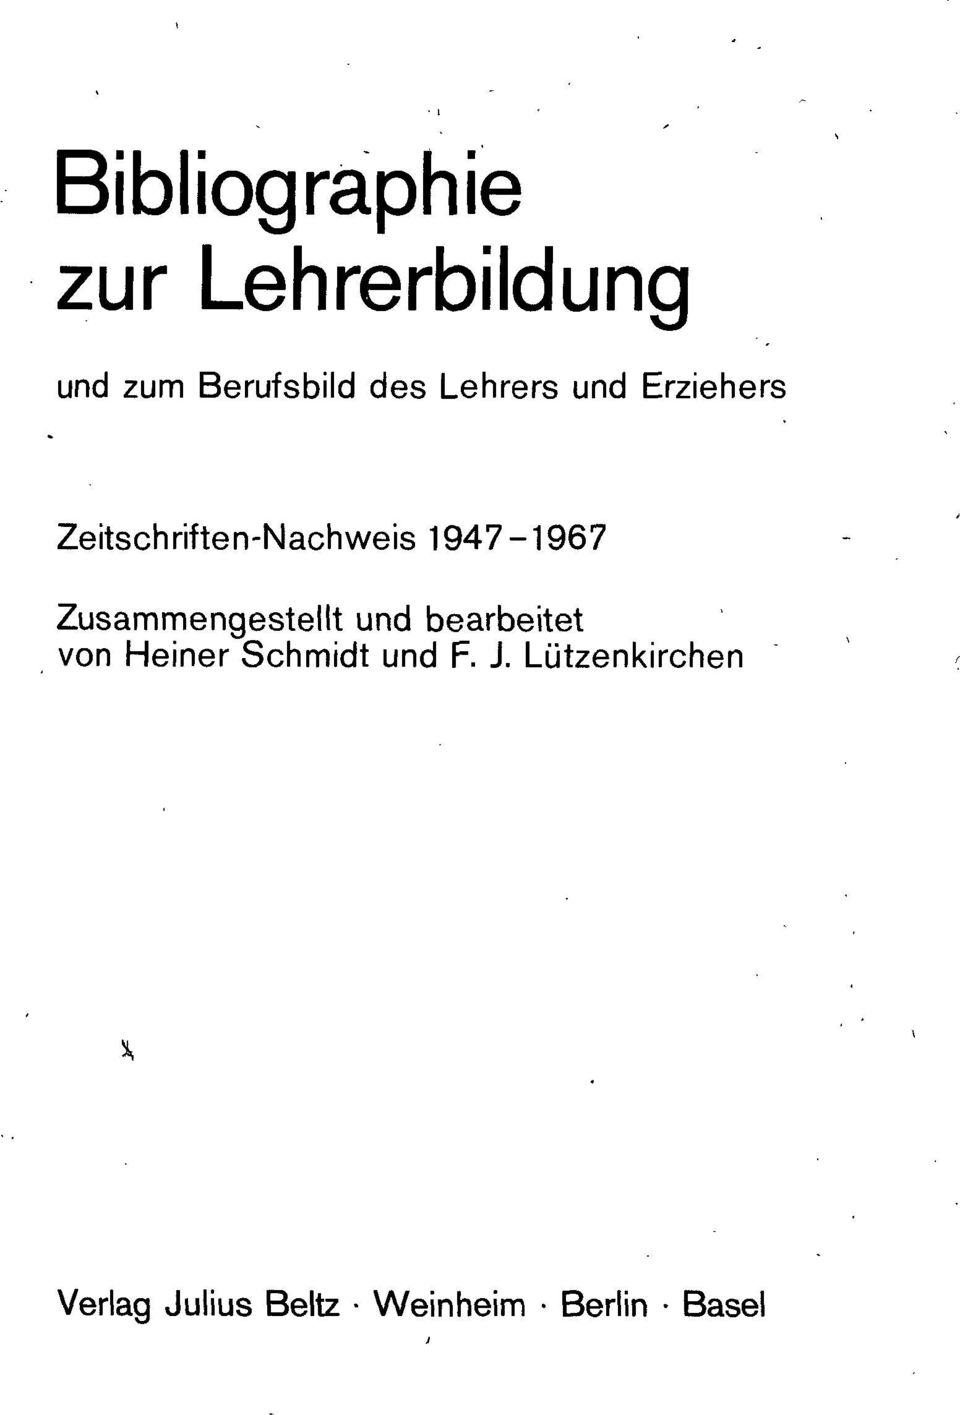 Zusammengestellt und bearbeitet von Heiner Schmidt und F.